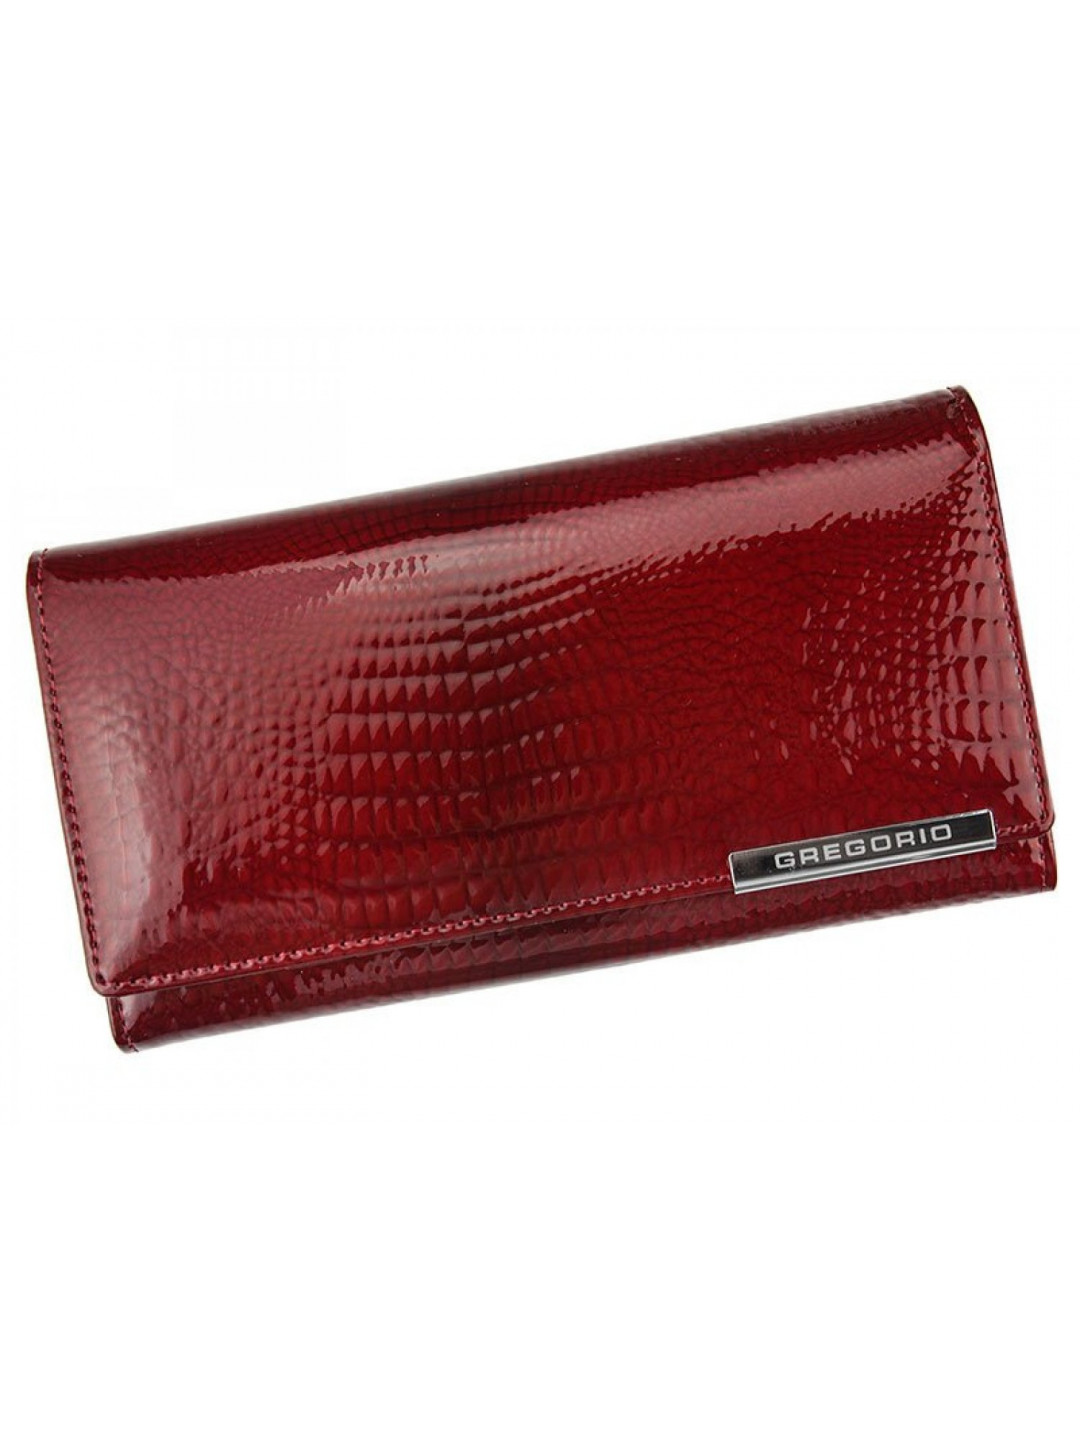 Luxusní dámská kožená peněženka s hadím vzorem Gregorio Sissi červená